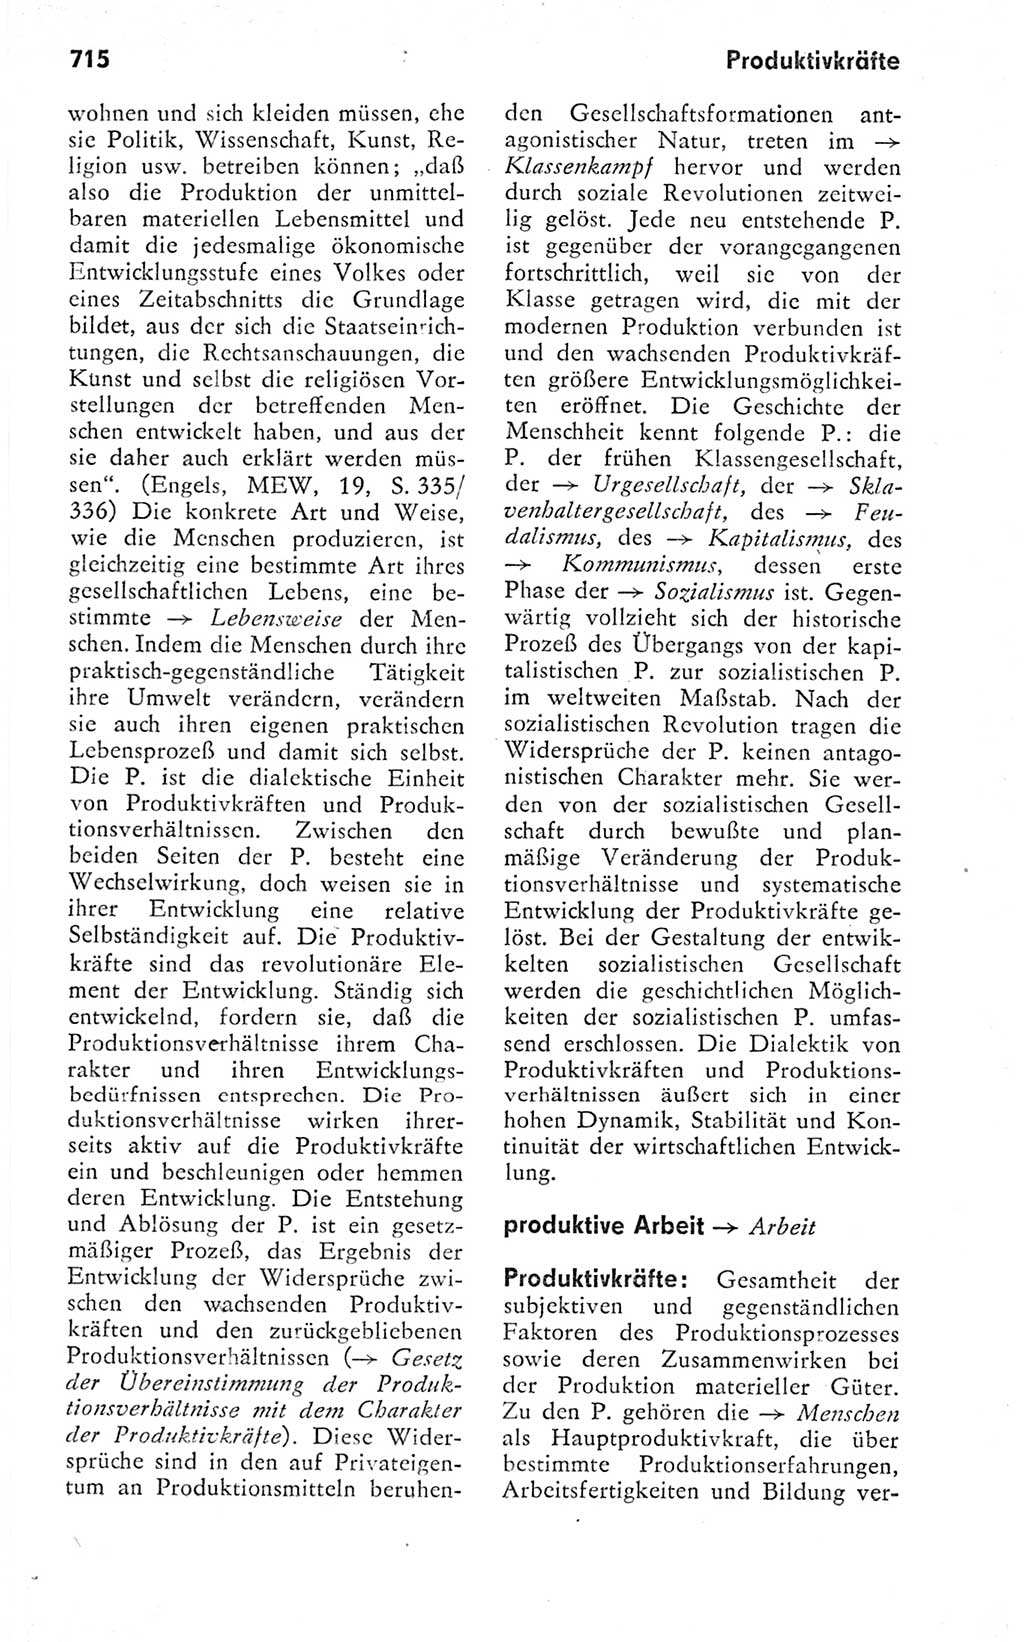 Kleines politisches Wörterbuch [Deutsche Demokratische Republik (DDR)] 1978, Seite 715 (Kl. pol. Wb. DDR 1978, S. 715)